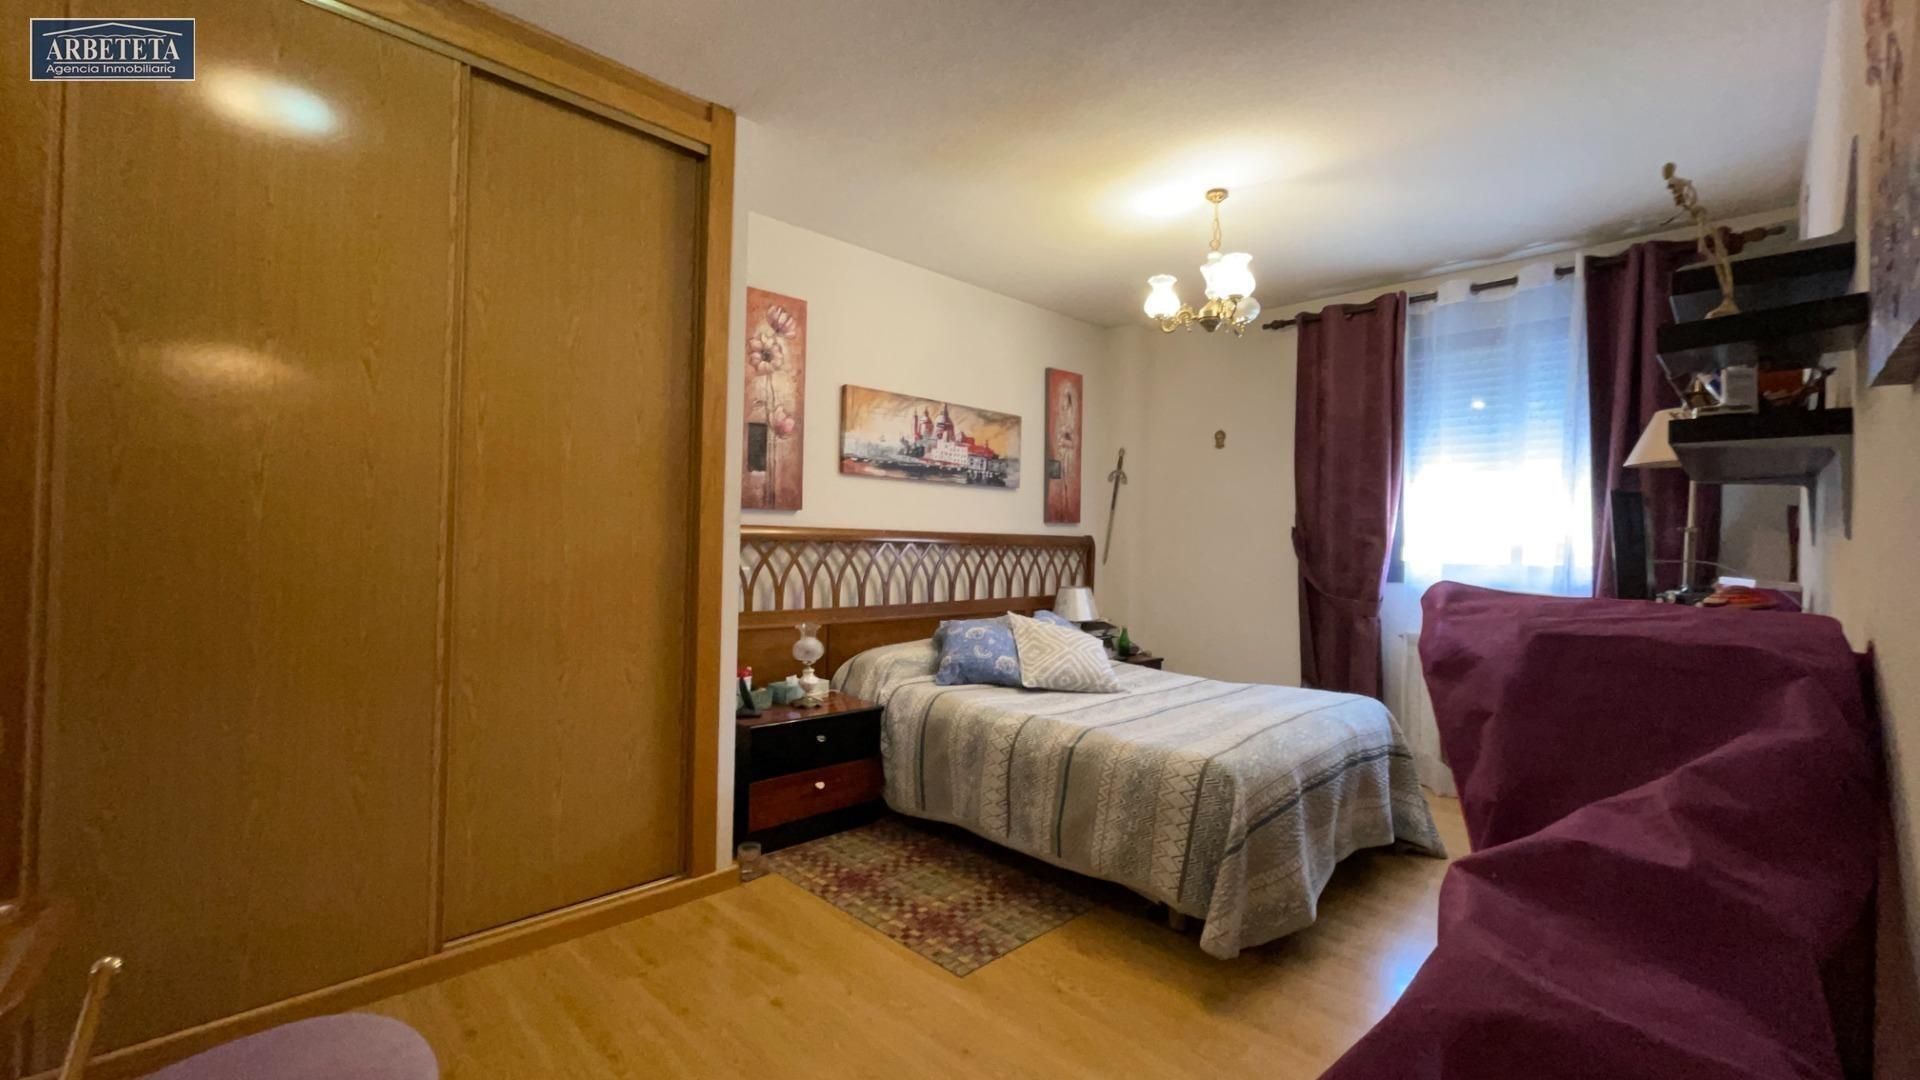 Diferentes Cortinas según la estancia del hogar: salón, dormitorio y baño -  Cortinas Sanmar